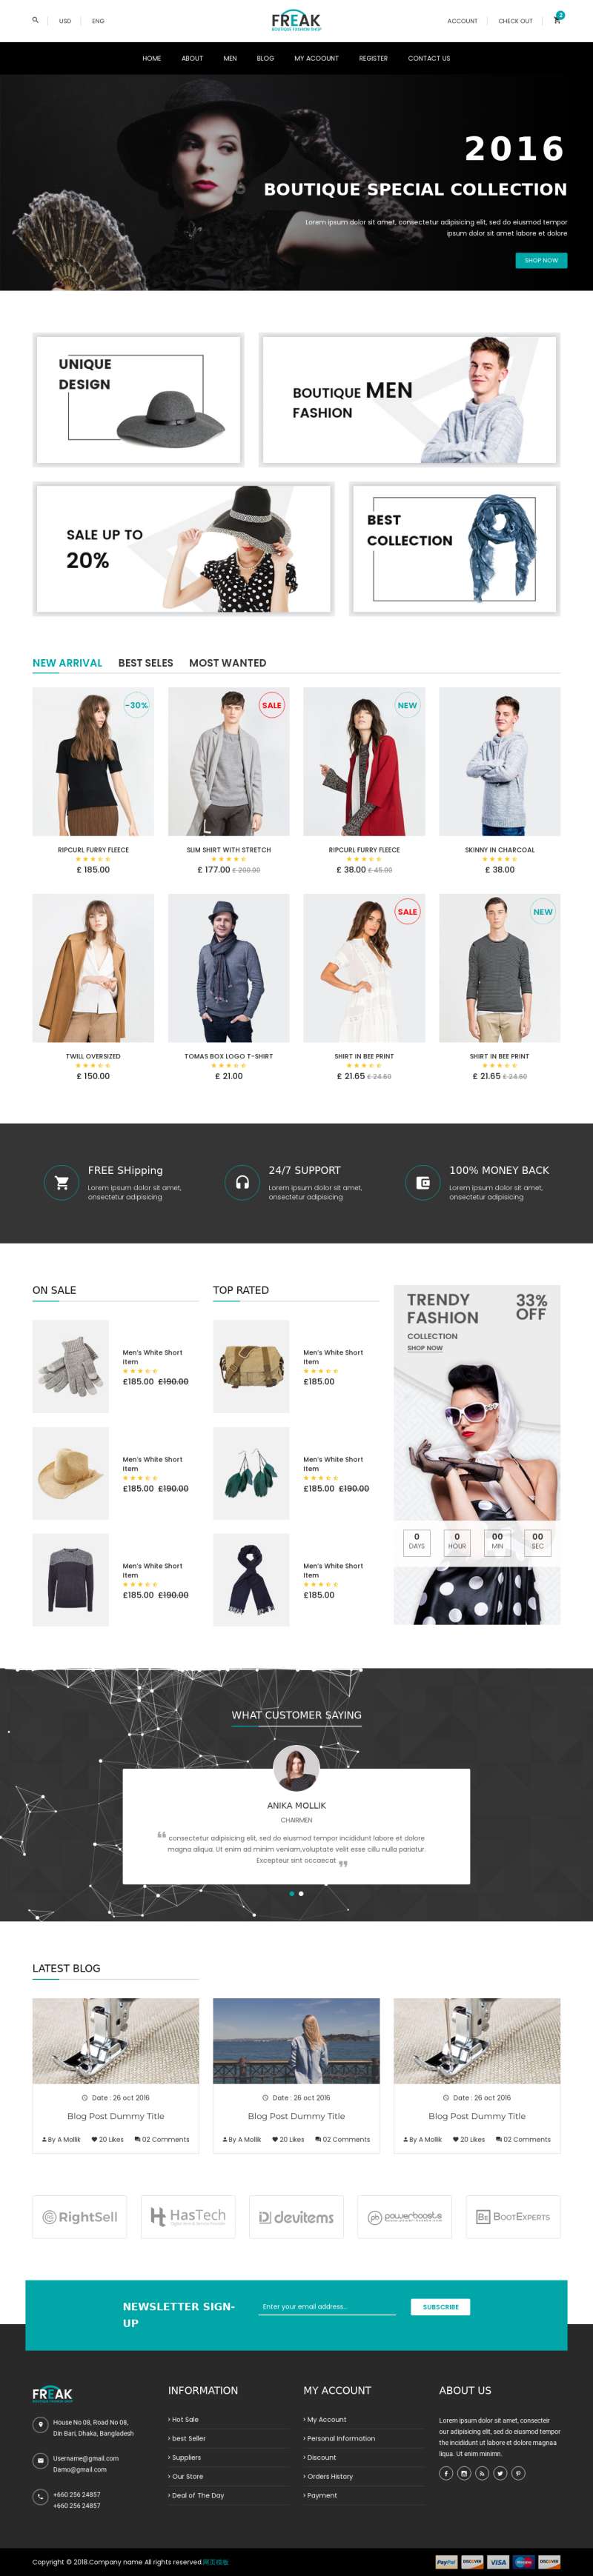 黑色大气的服装销售电商网站模板